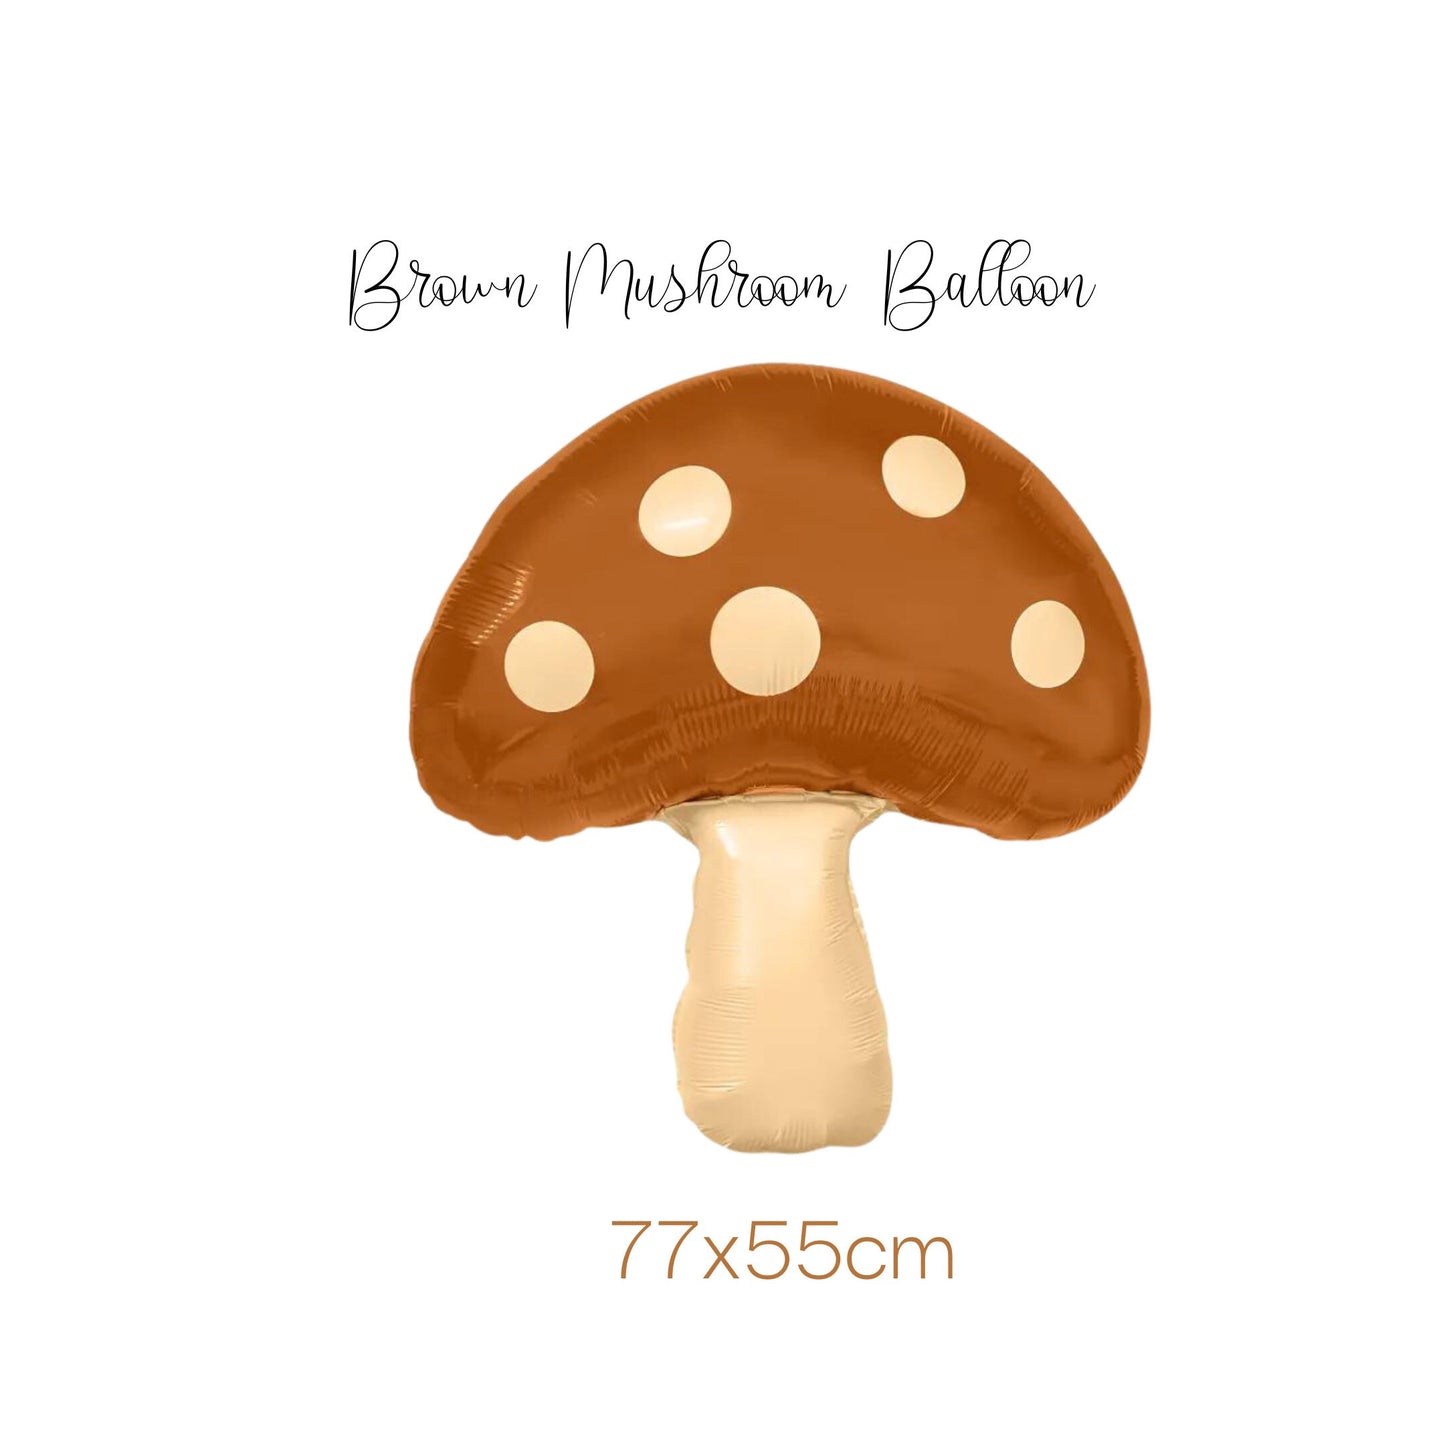 Brown Mushroom foil Balloon, neutral colour mushroom balloon.